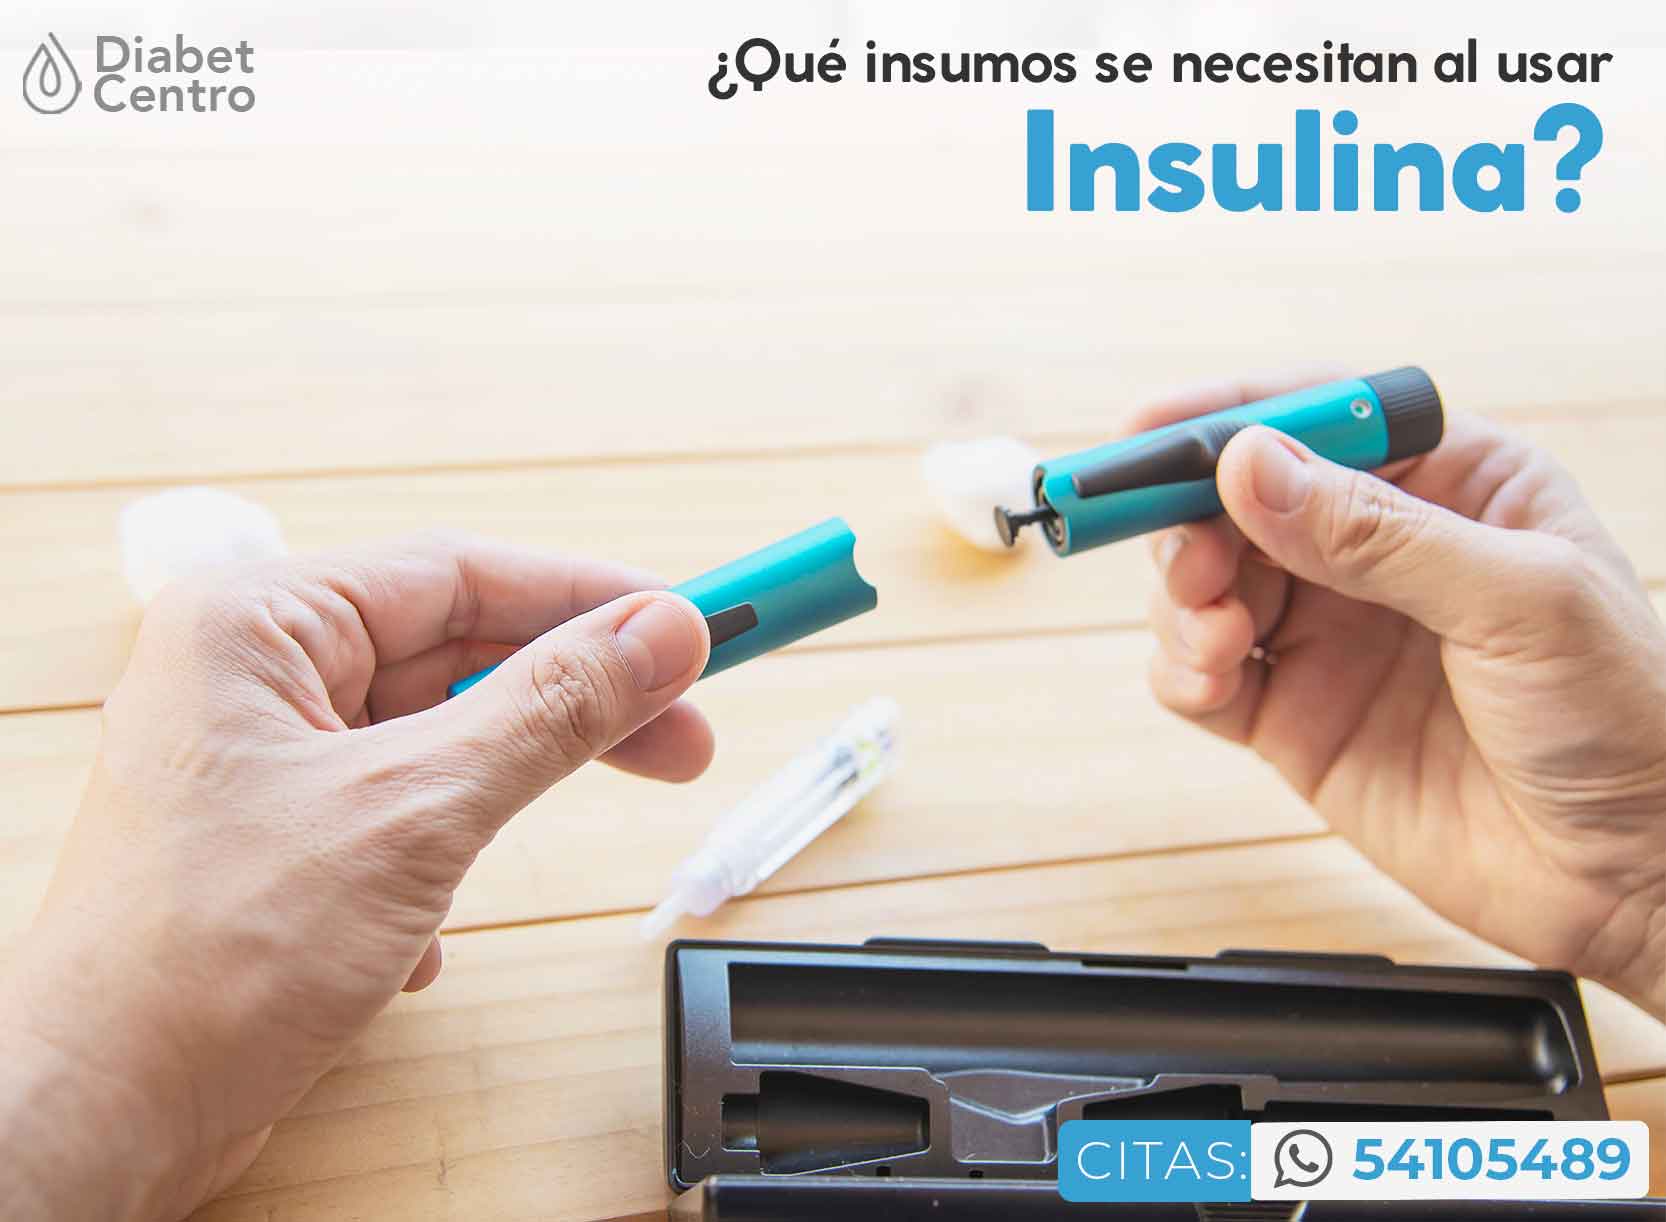 ¿Qué insumos se necesitan al usar insulina?